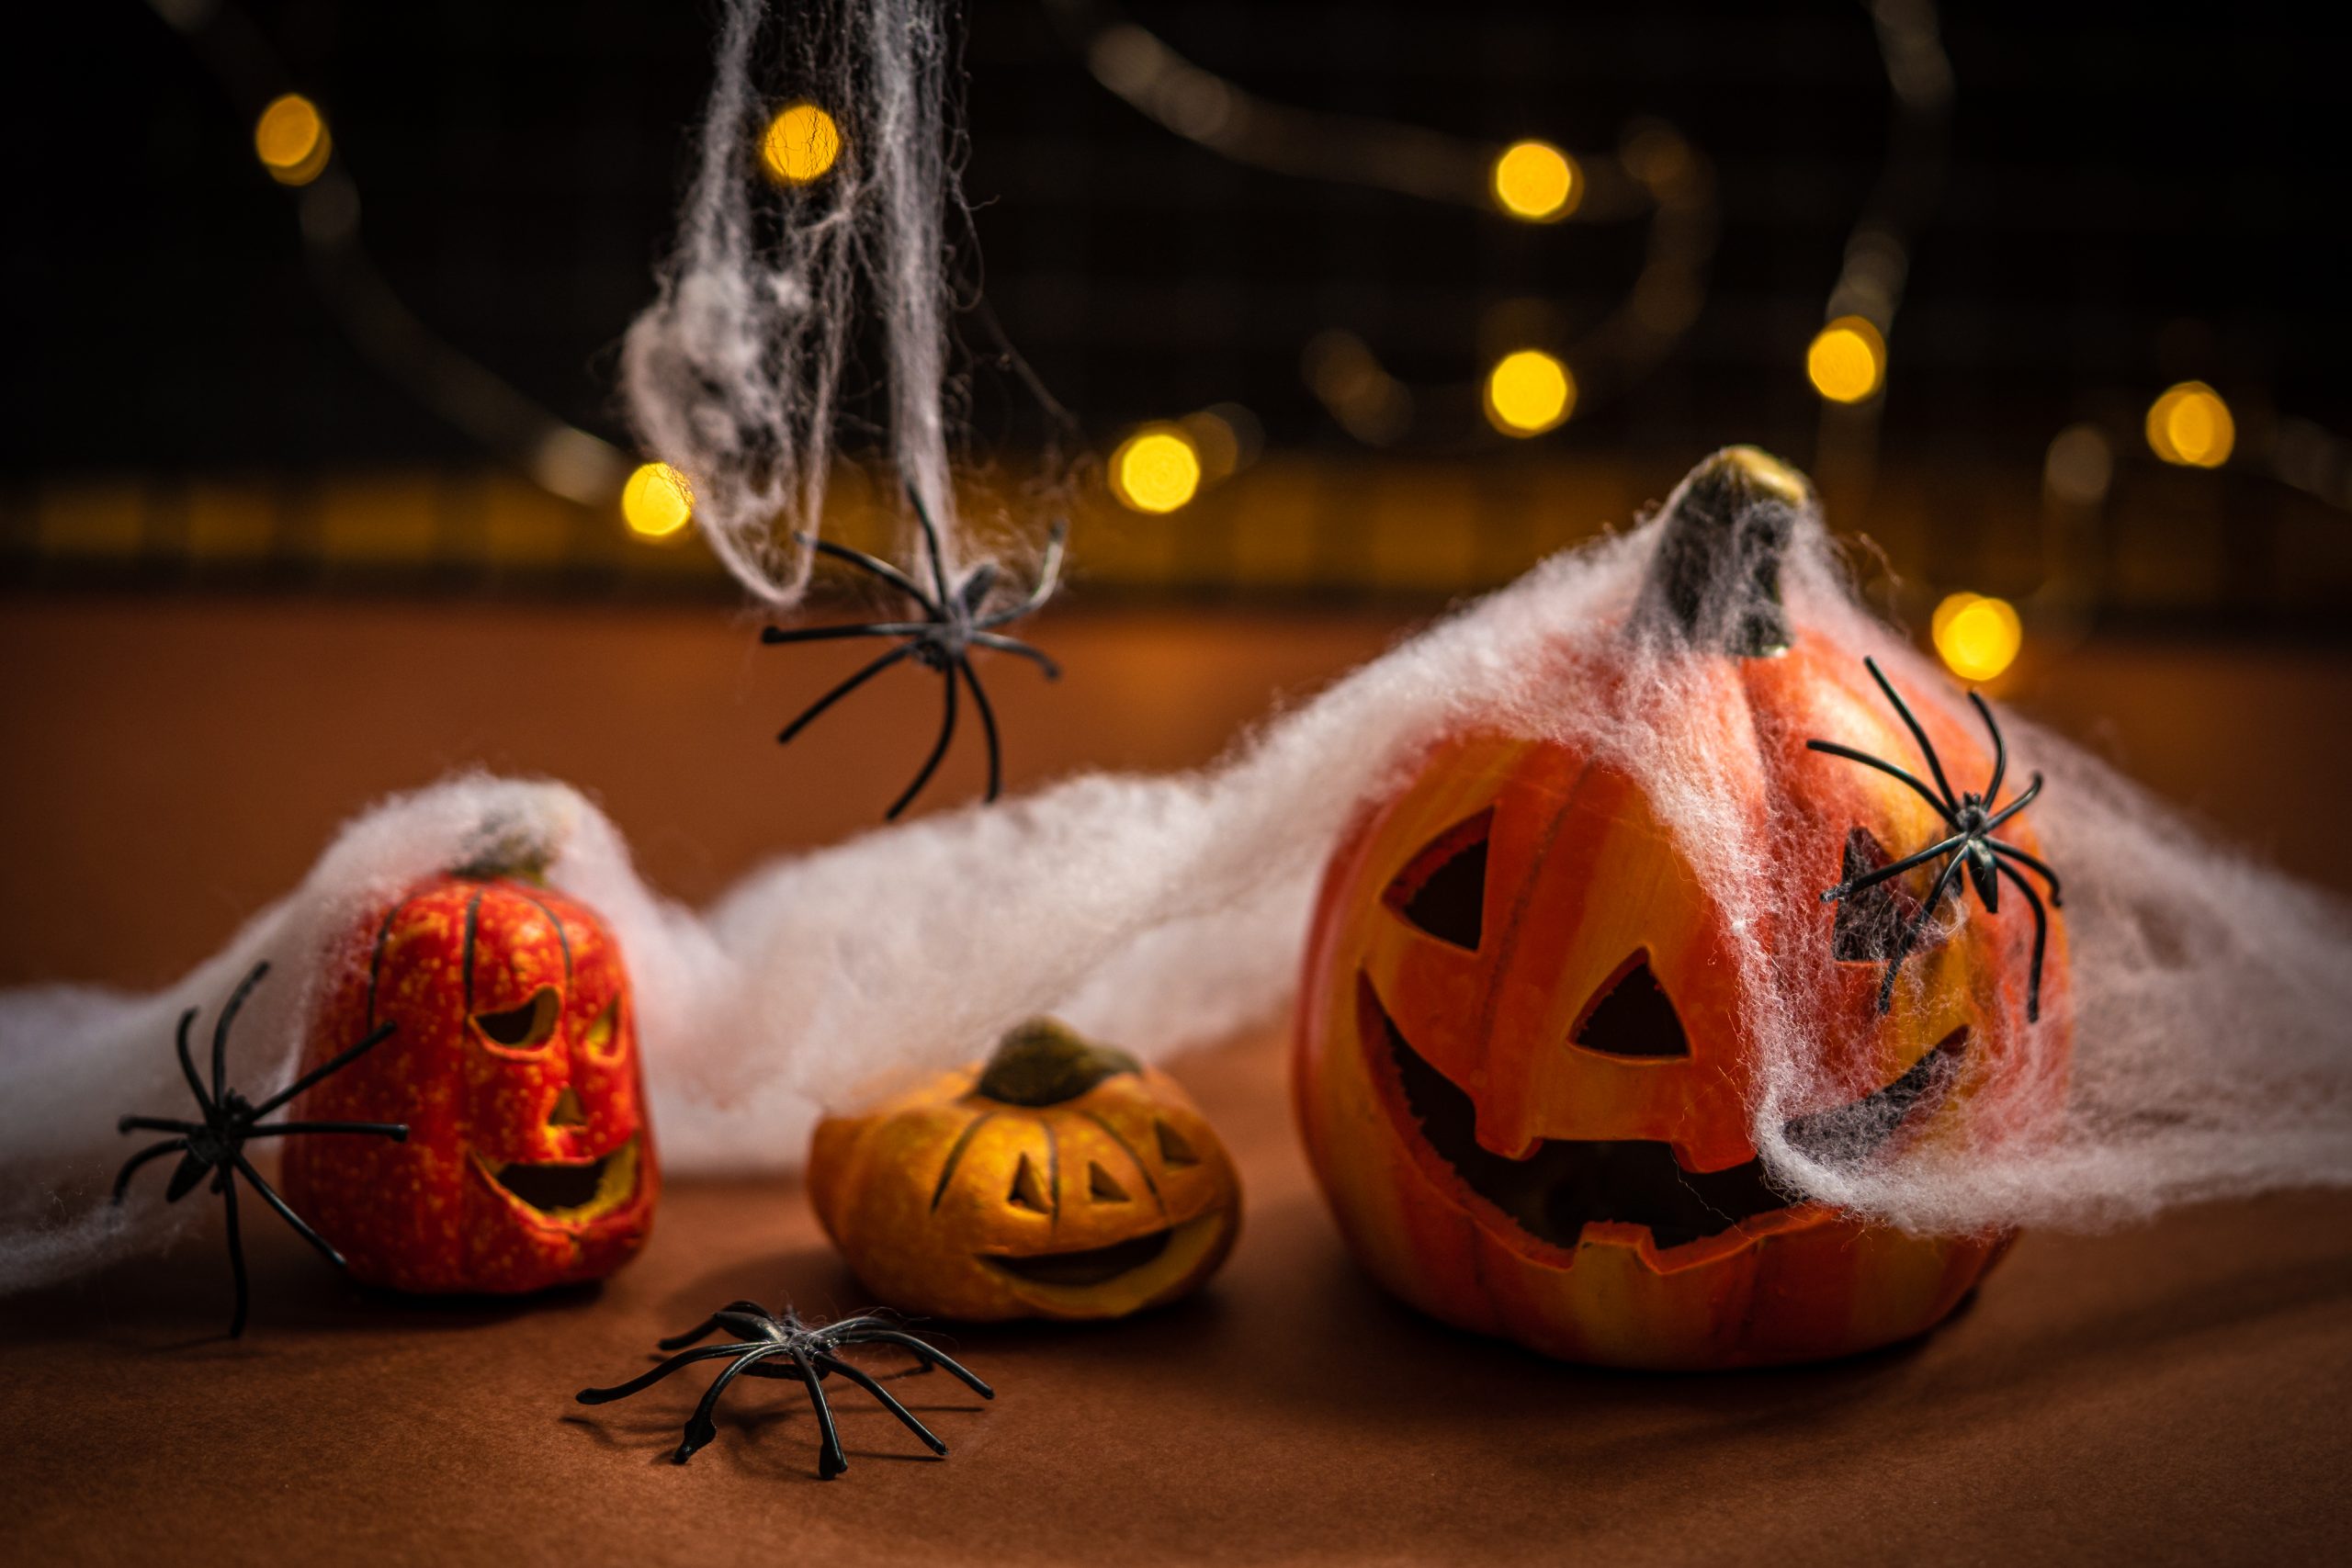 Filmes para assistir no Halloween - Blog da Maria